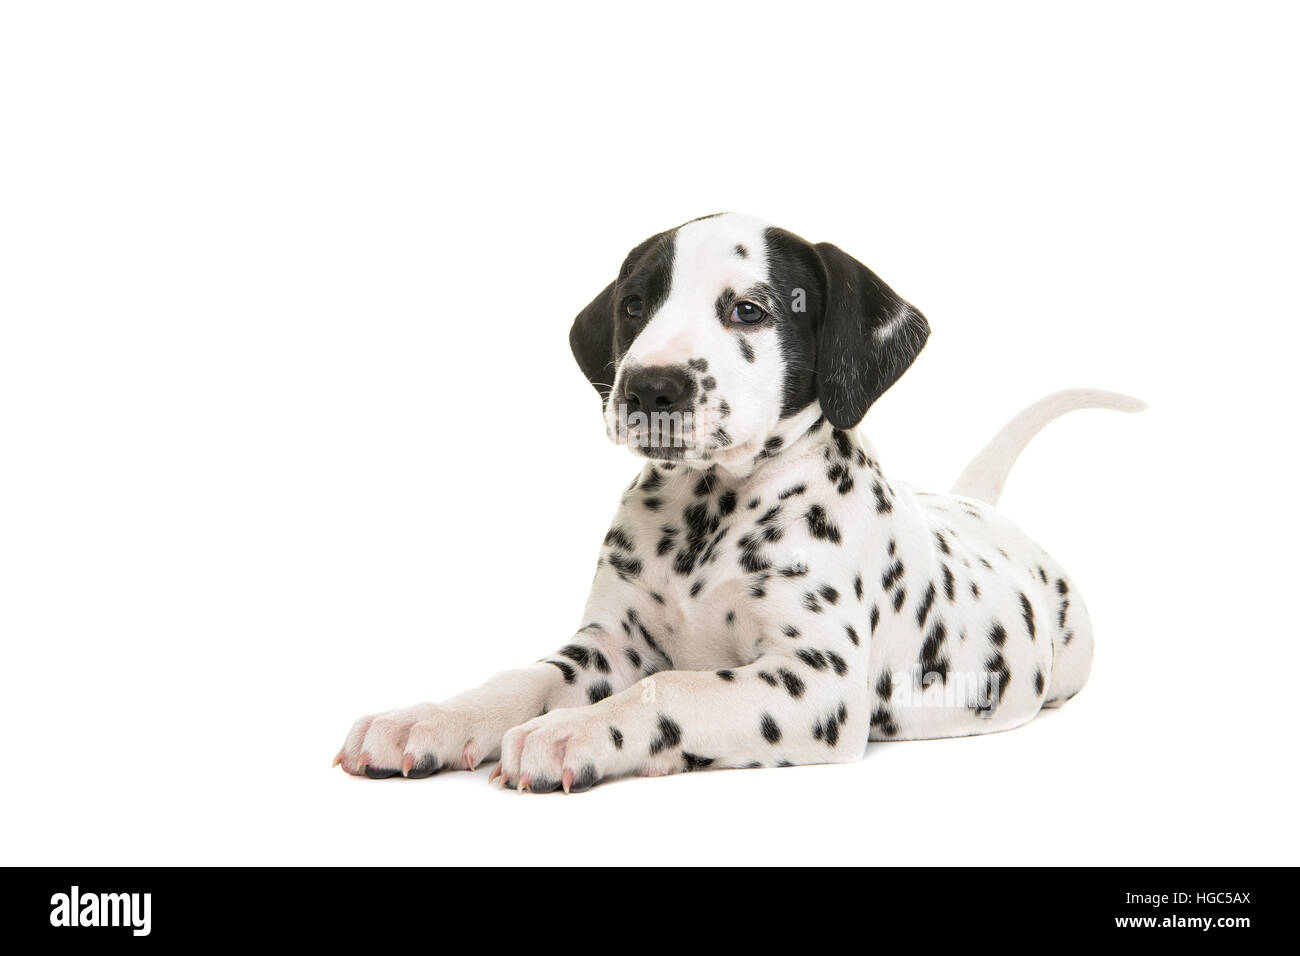 Grazioso cucciolo dalmata sdraiato rivolta verso le camere isolate su uno sfondo bianco Foto Stock